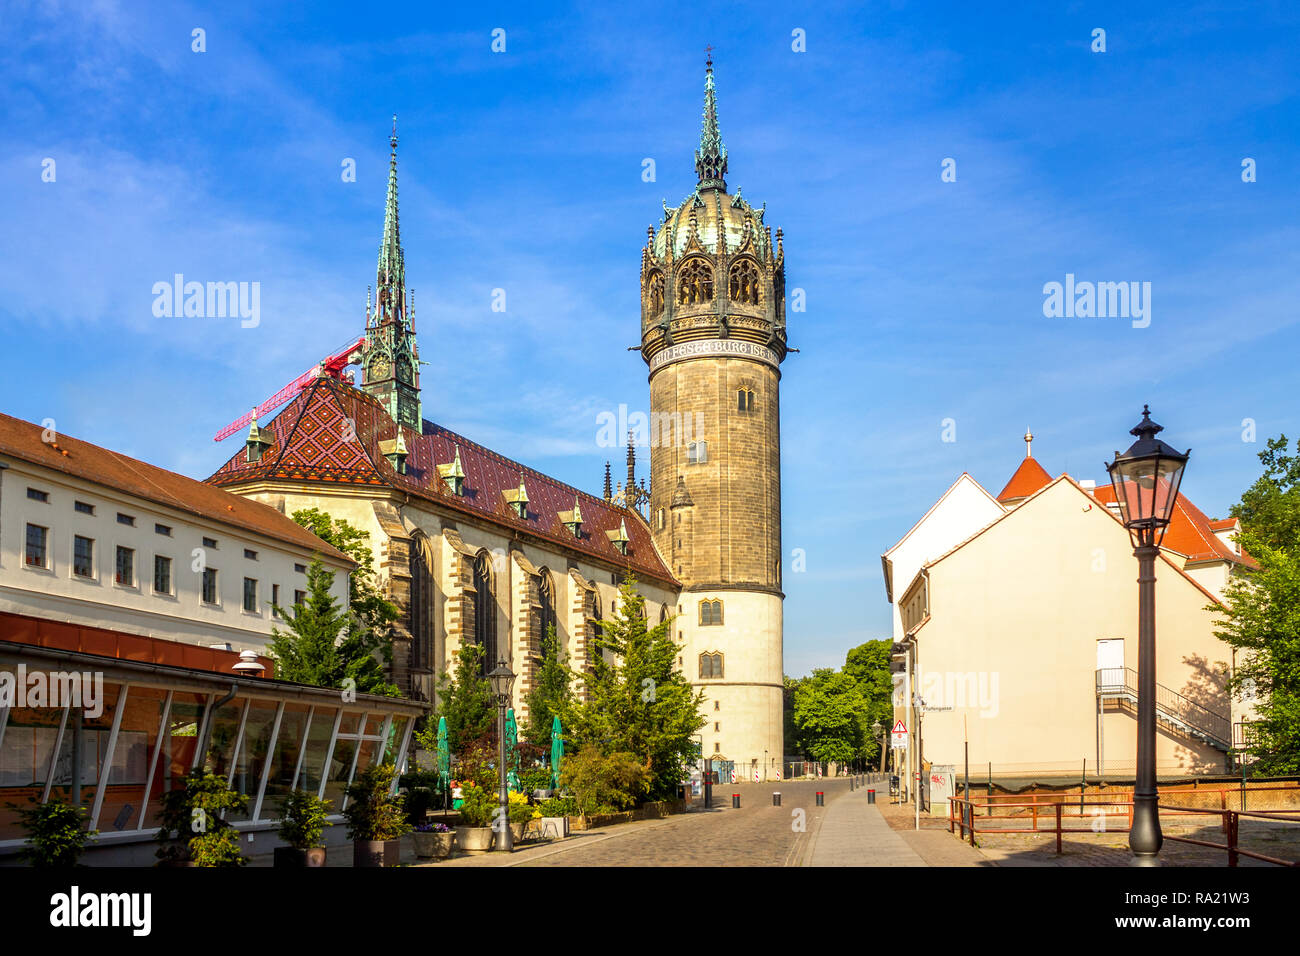 Église de château, Wittenberg, Allemagne Banque D'Images